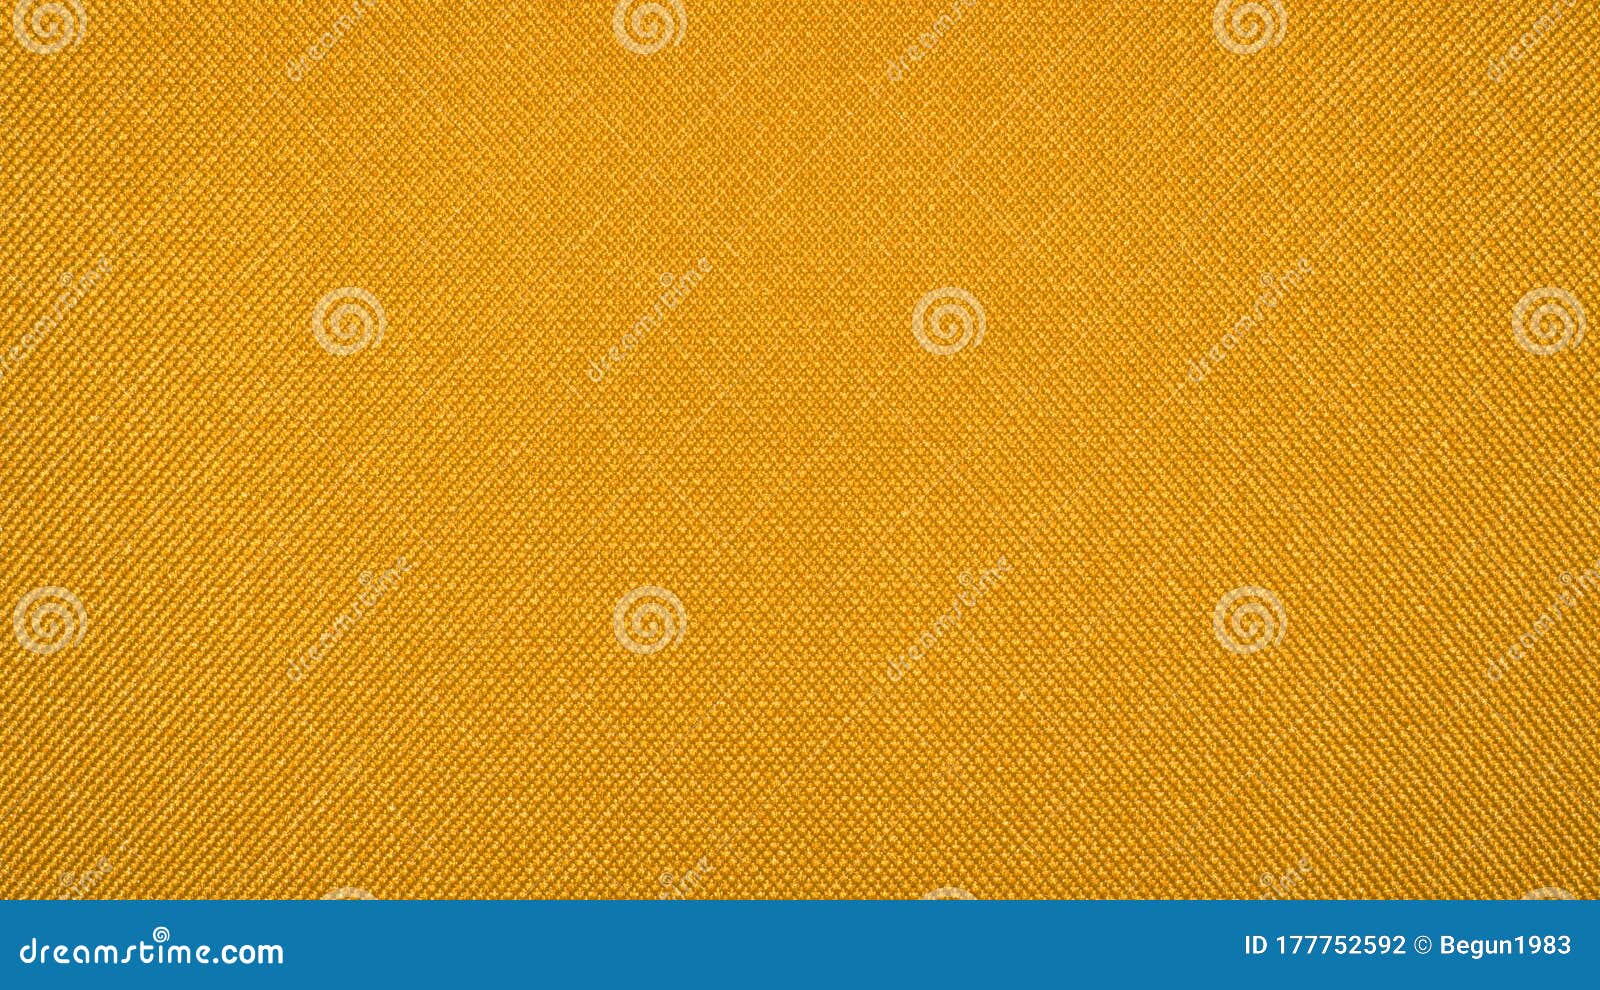 Yellow Braided Texture.Yellow Braided Background. Stock Photo - Image ...